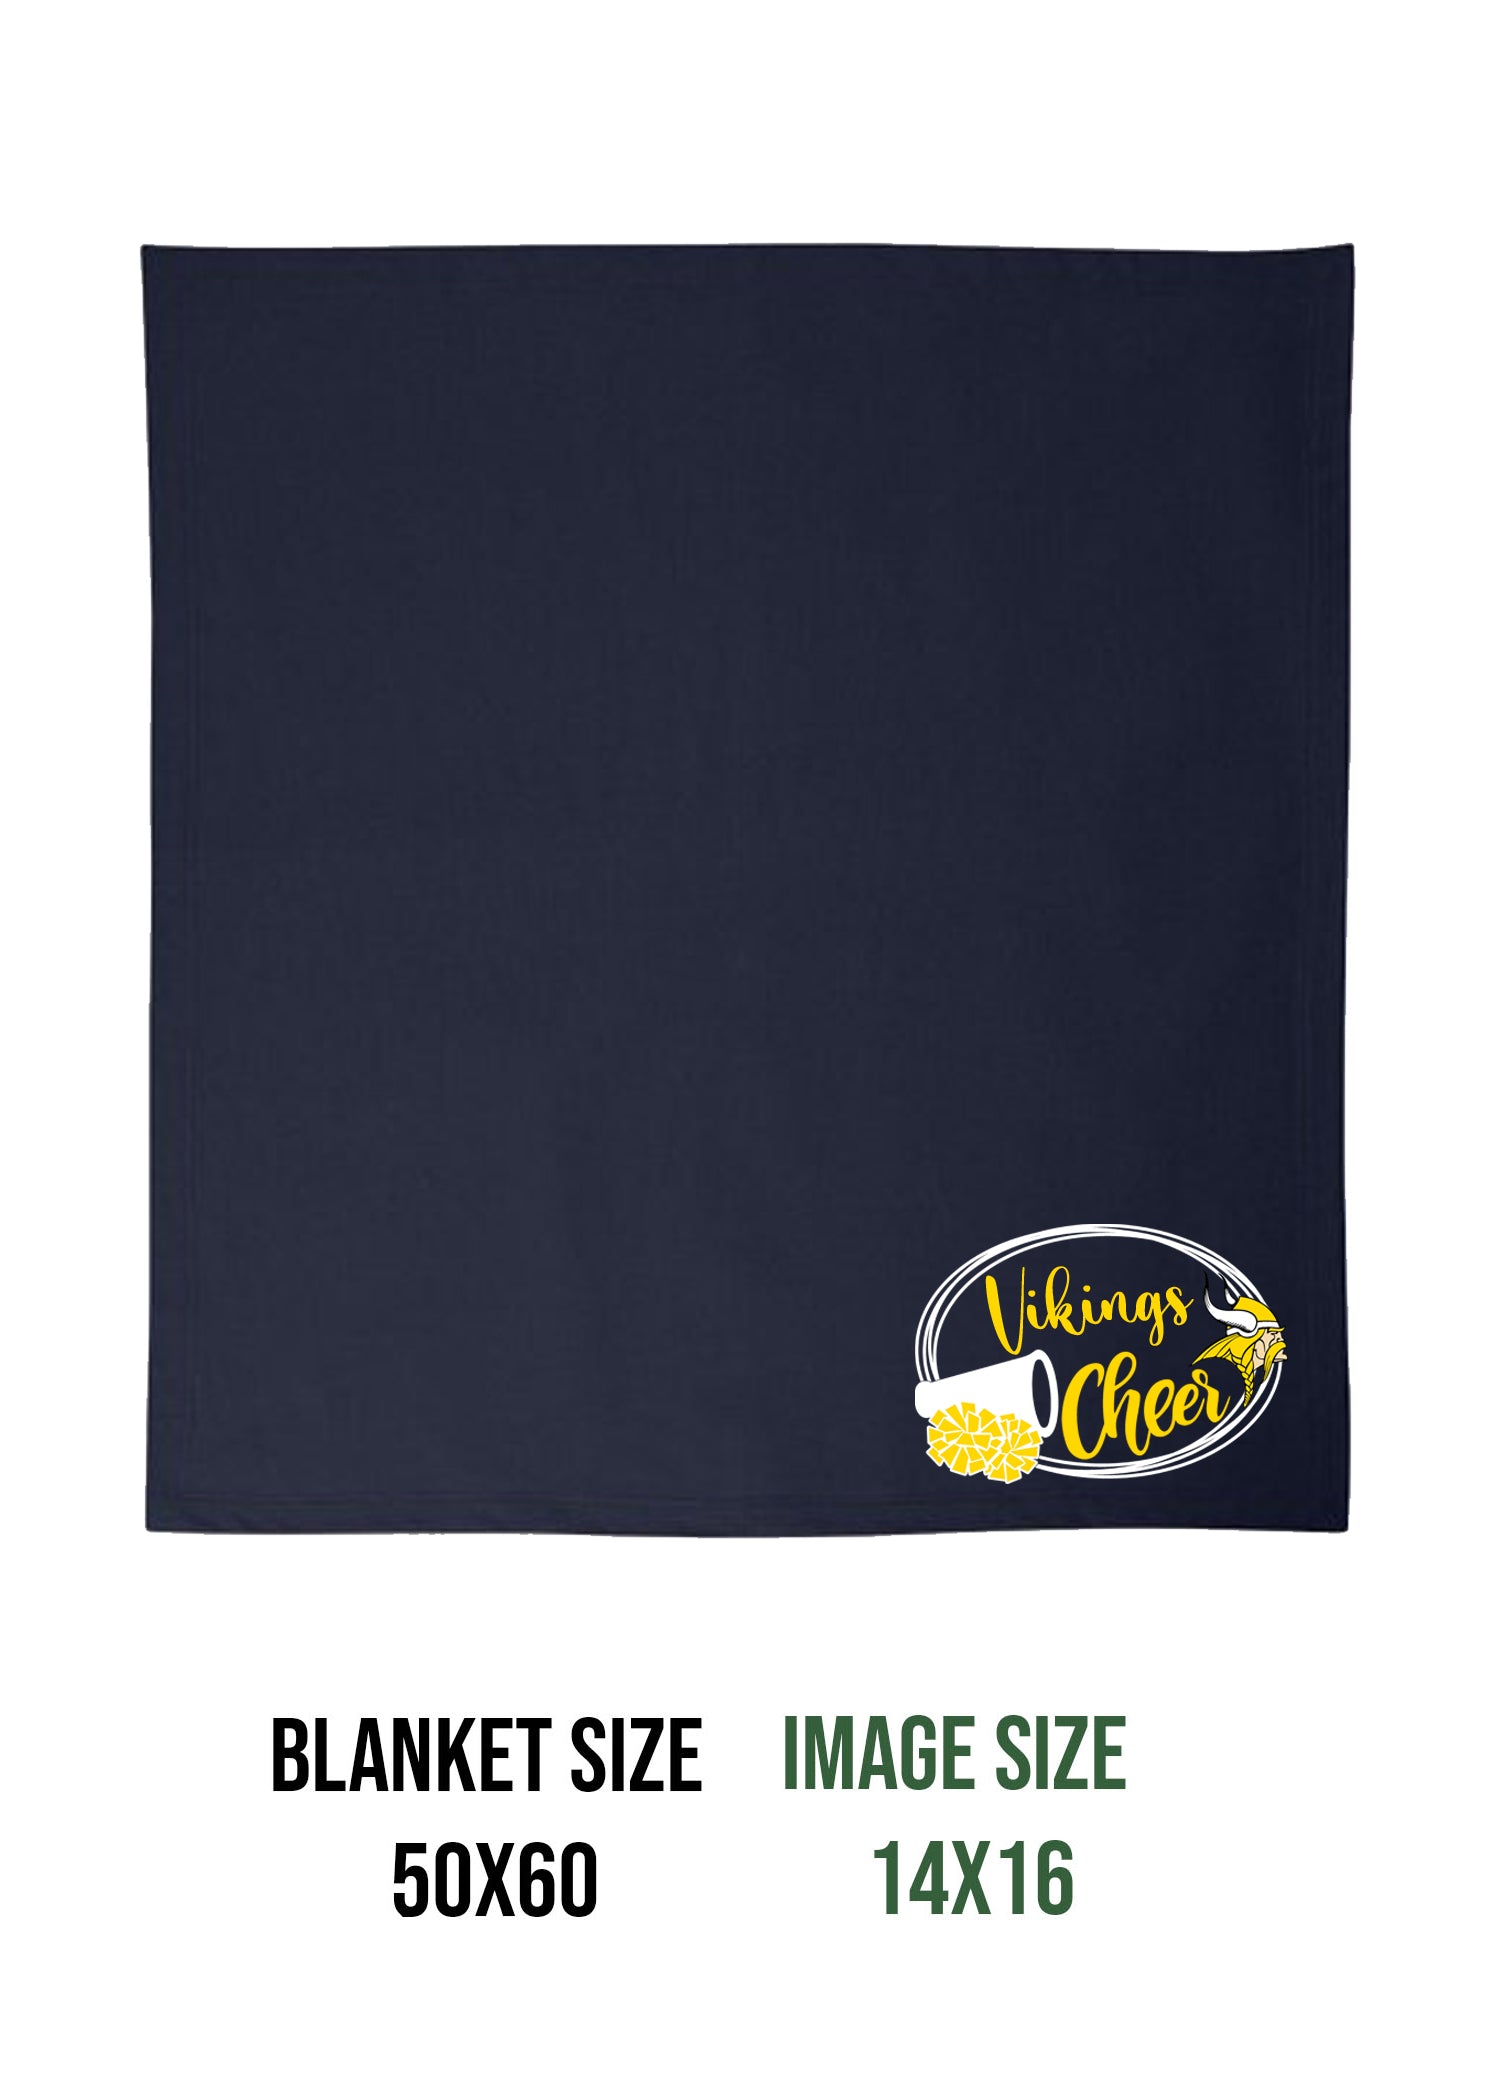 Vikings Cheer design 1 Blanket